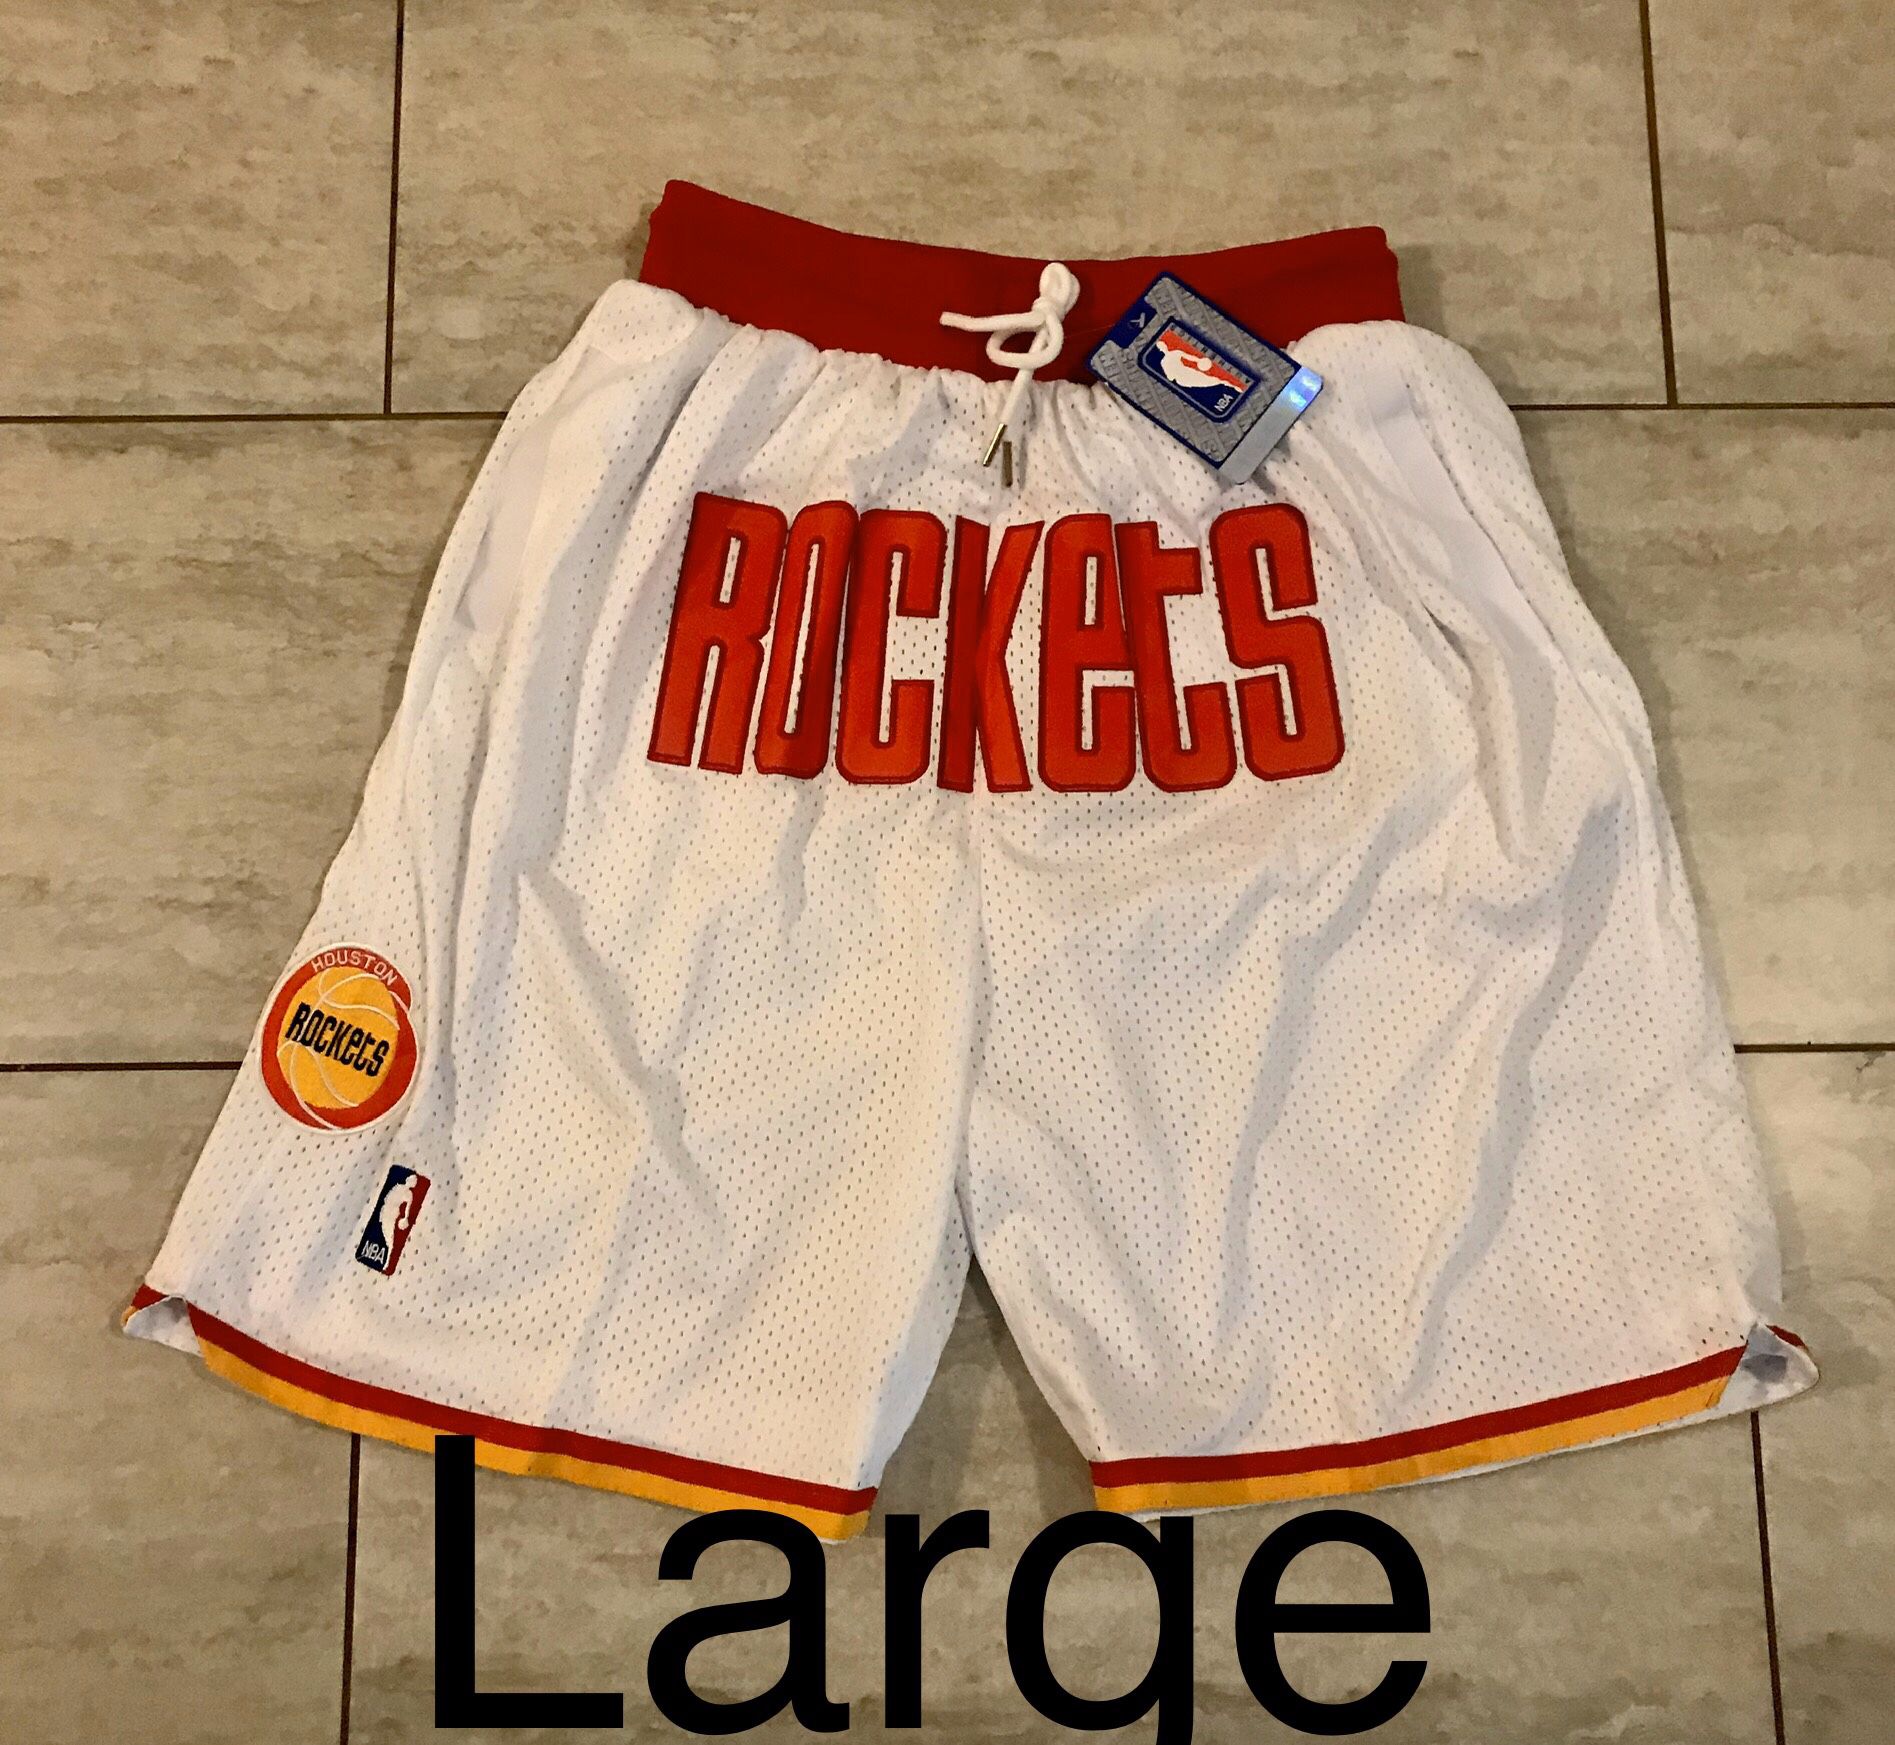 New! Houston Rockets Basketball Shorts Men’s Size Large